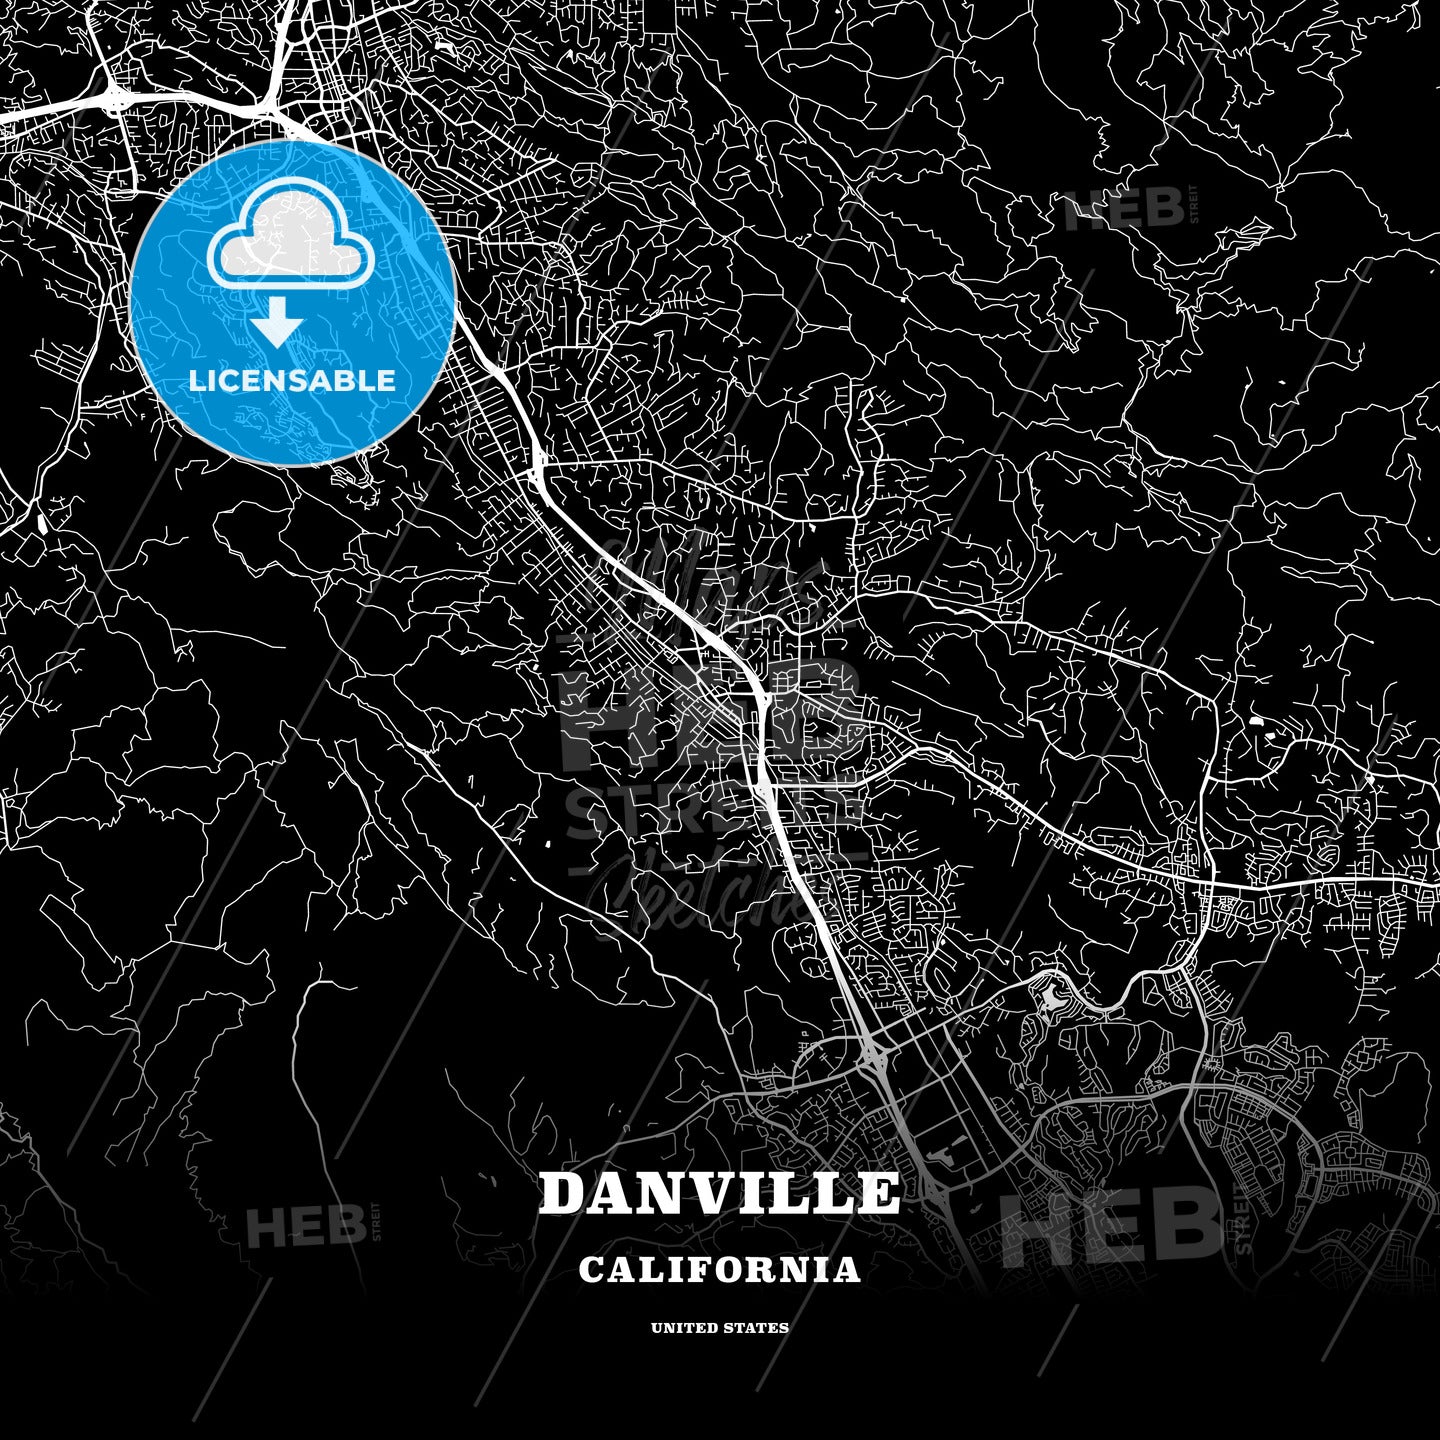 Danville, California, USA map